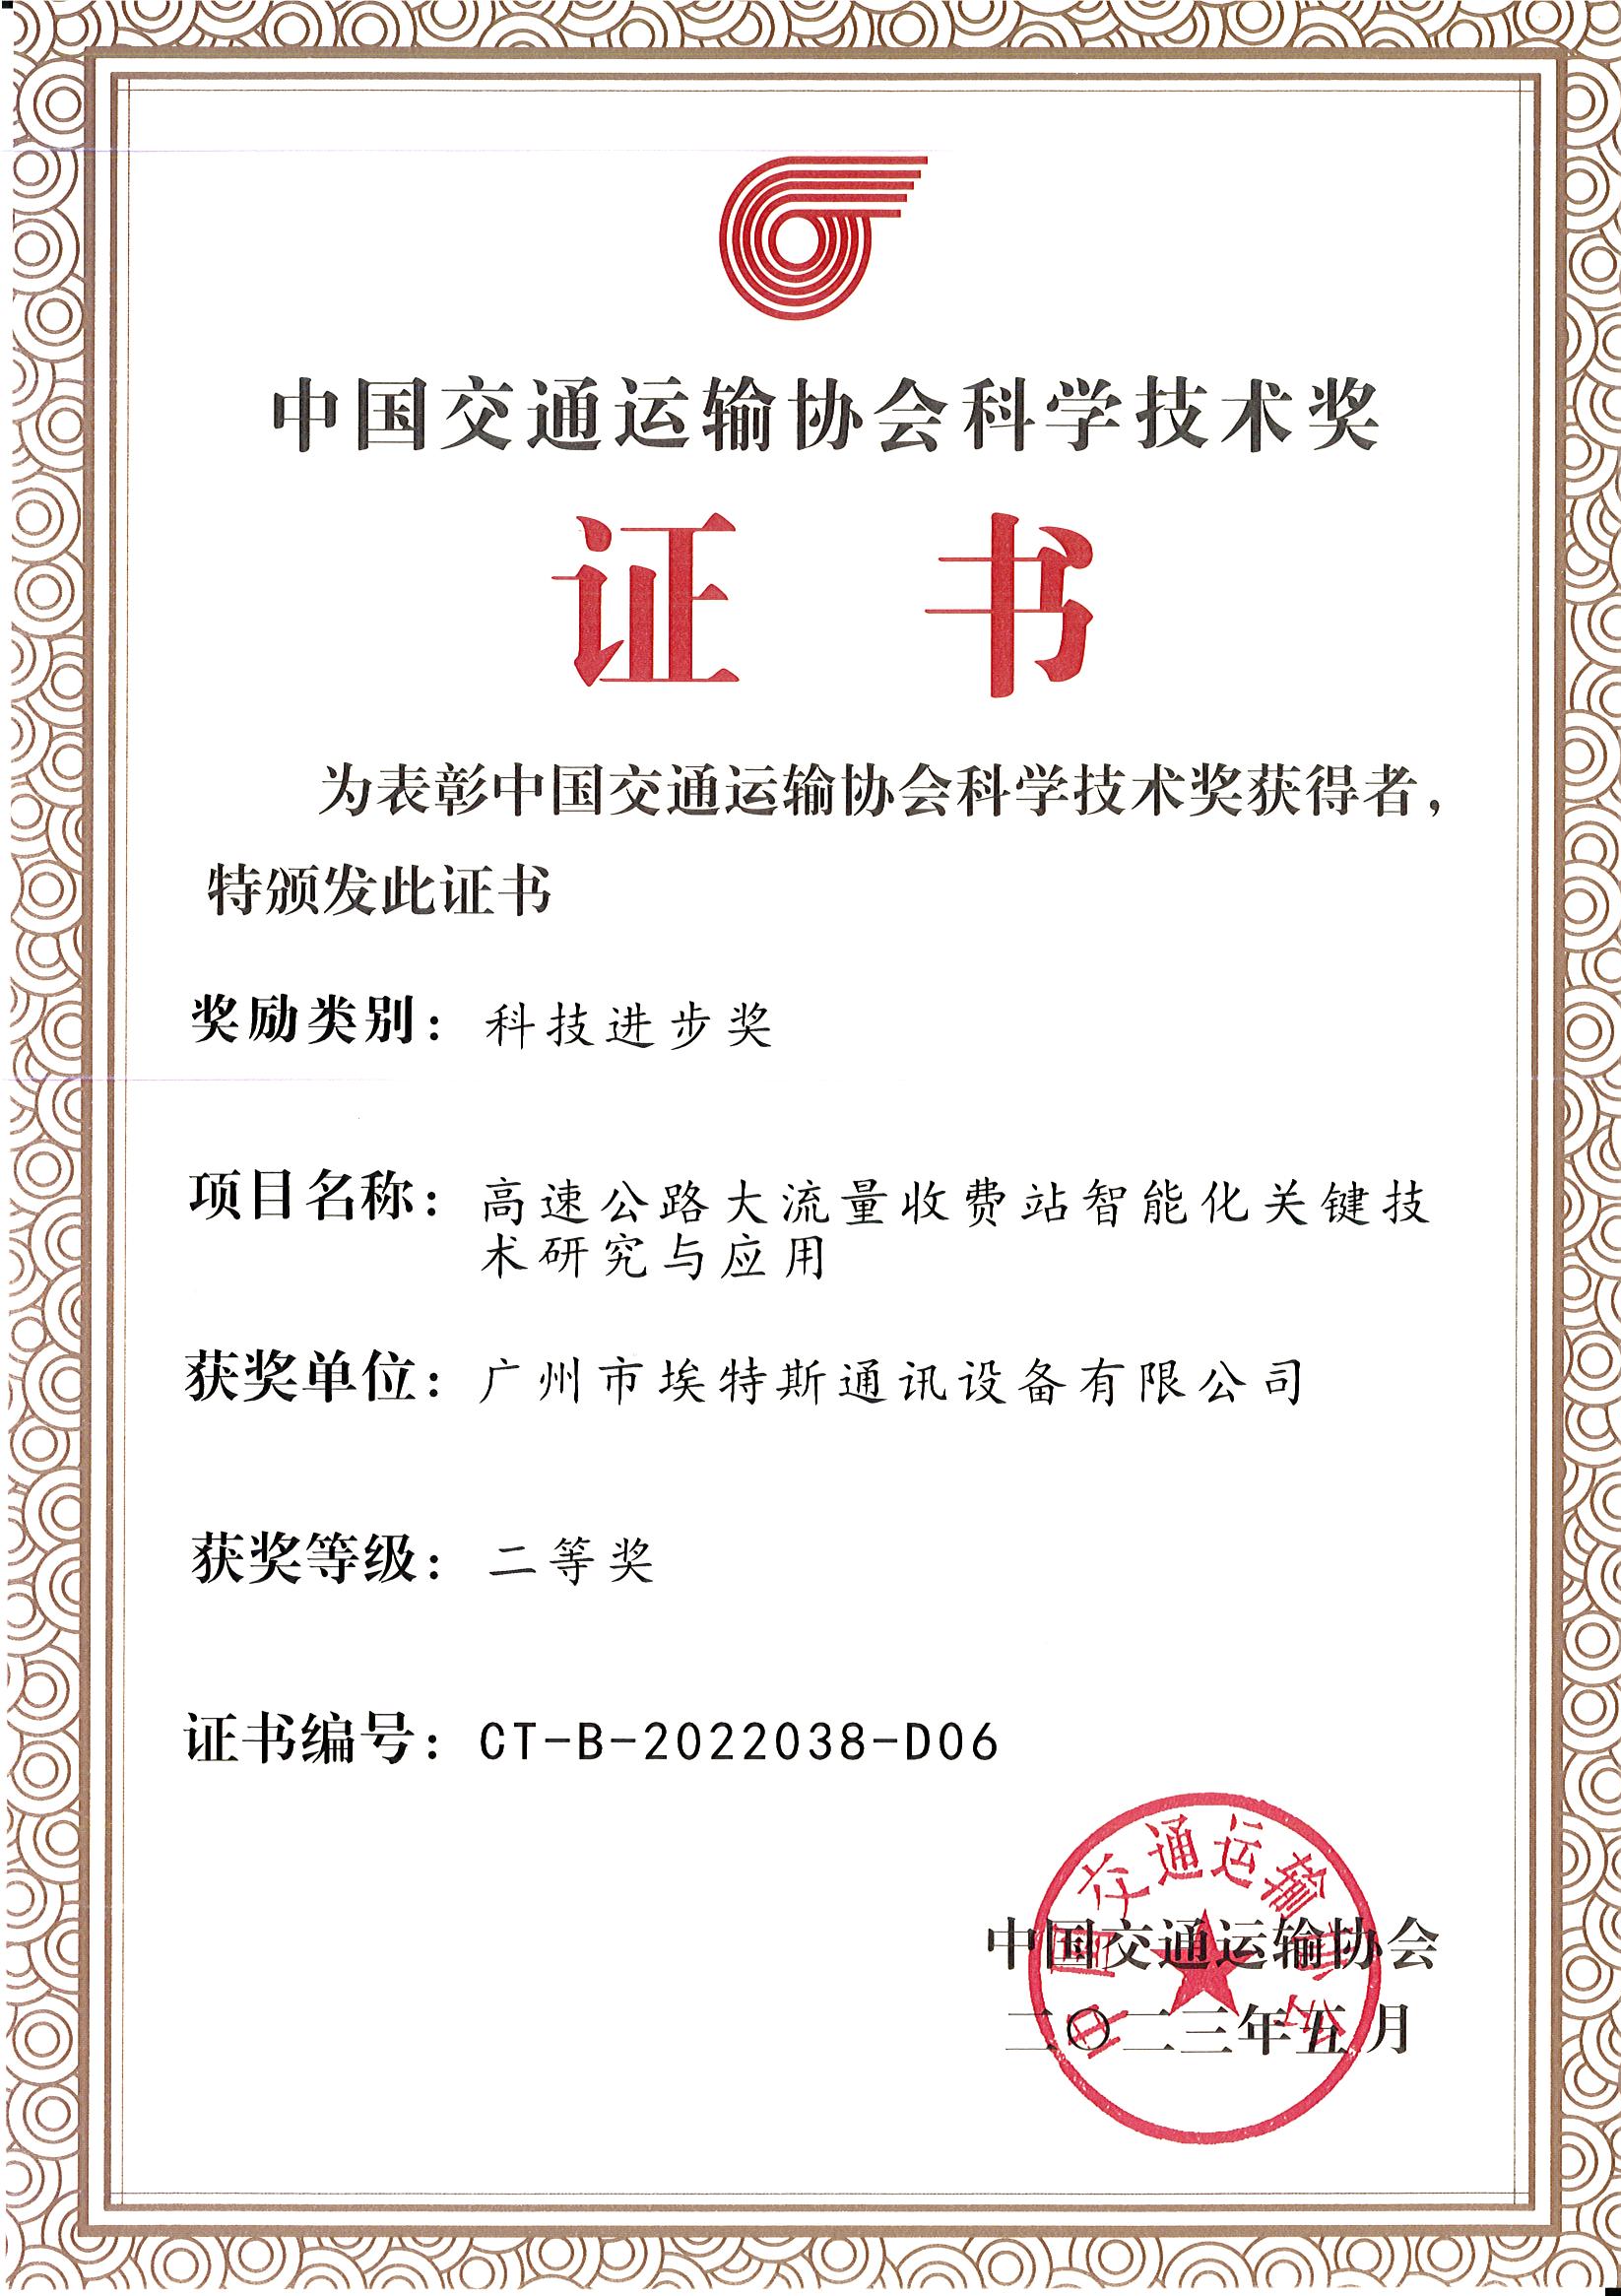 2023年5月-中国交通运输协会科学技术奖（科学进步奖）-埃特斯 - 副本.jpg